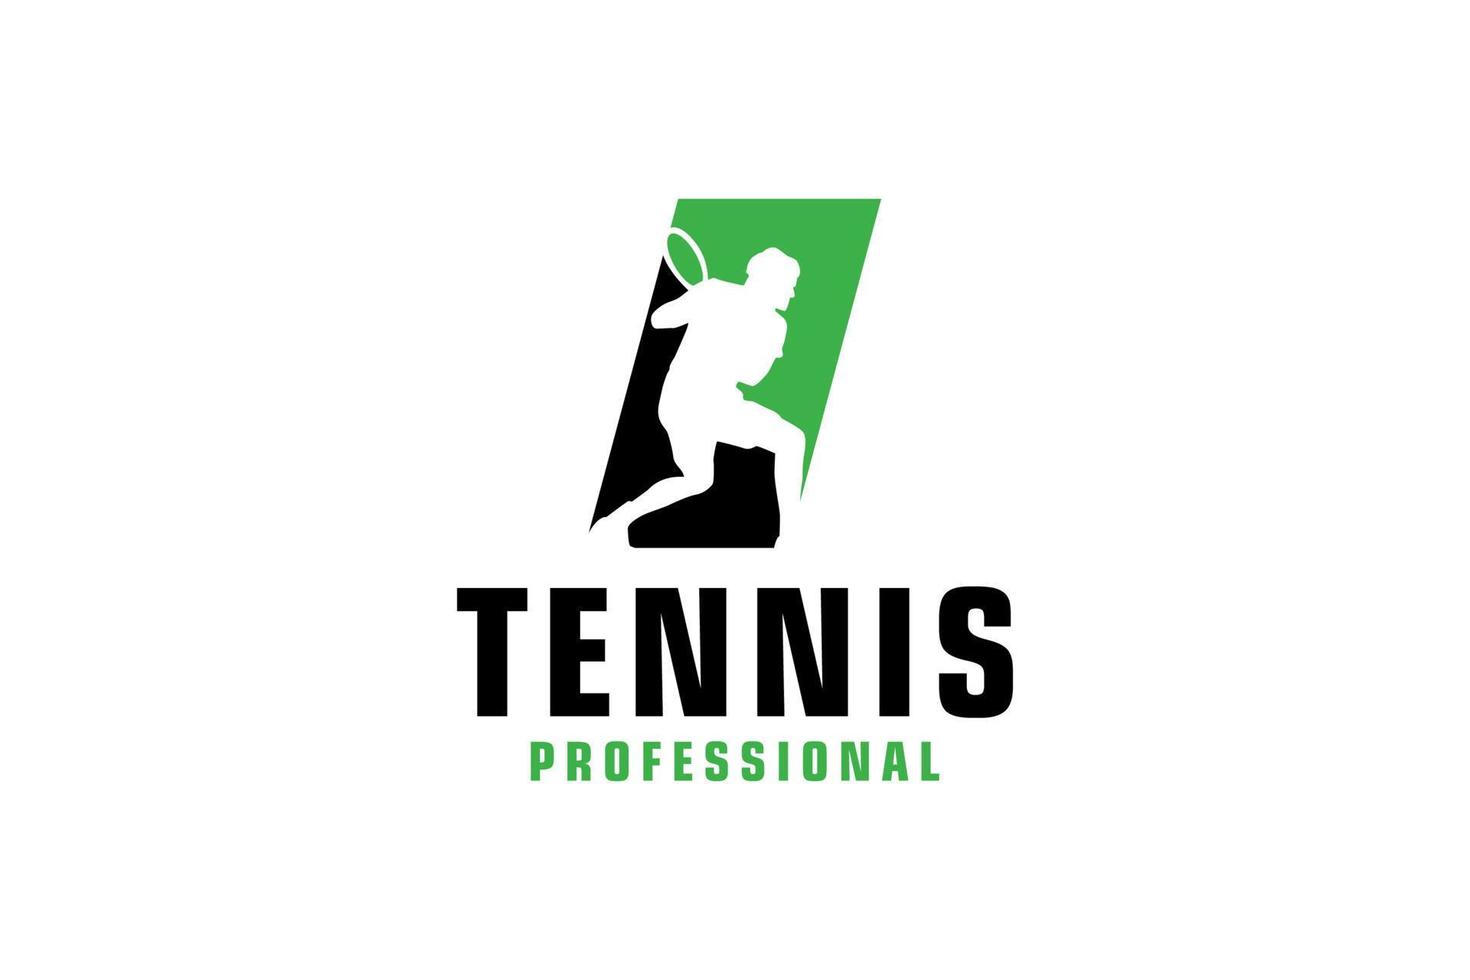 buchstabe i mit tennisspieler-silhouette-logo-design. Vektordesign-Vorlagenelemente für Sportteams oder Corporate Identity. vektor